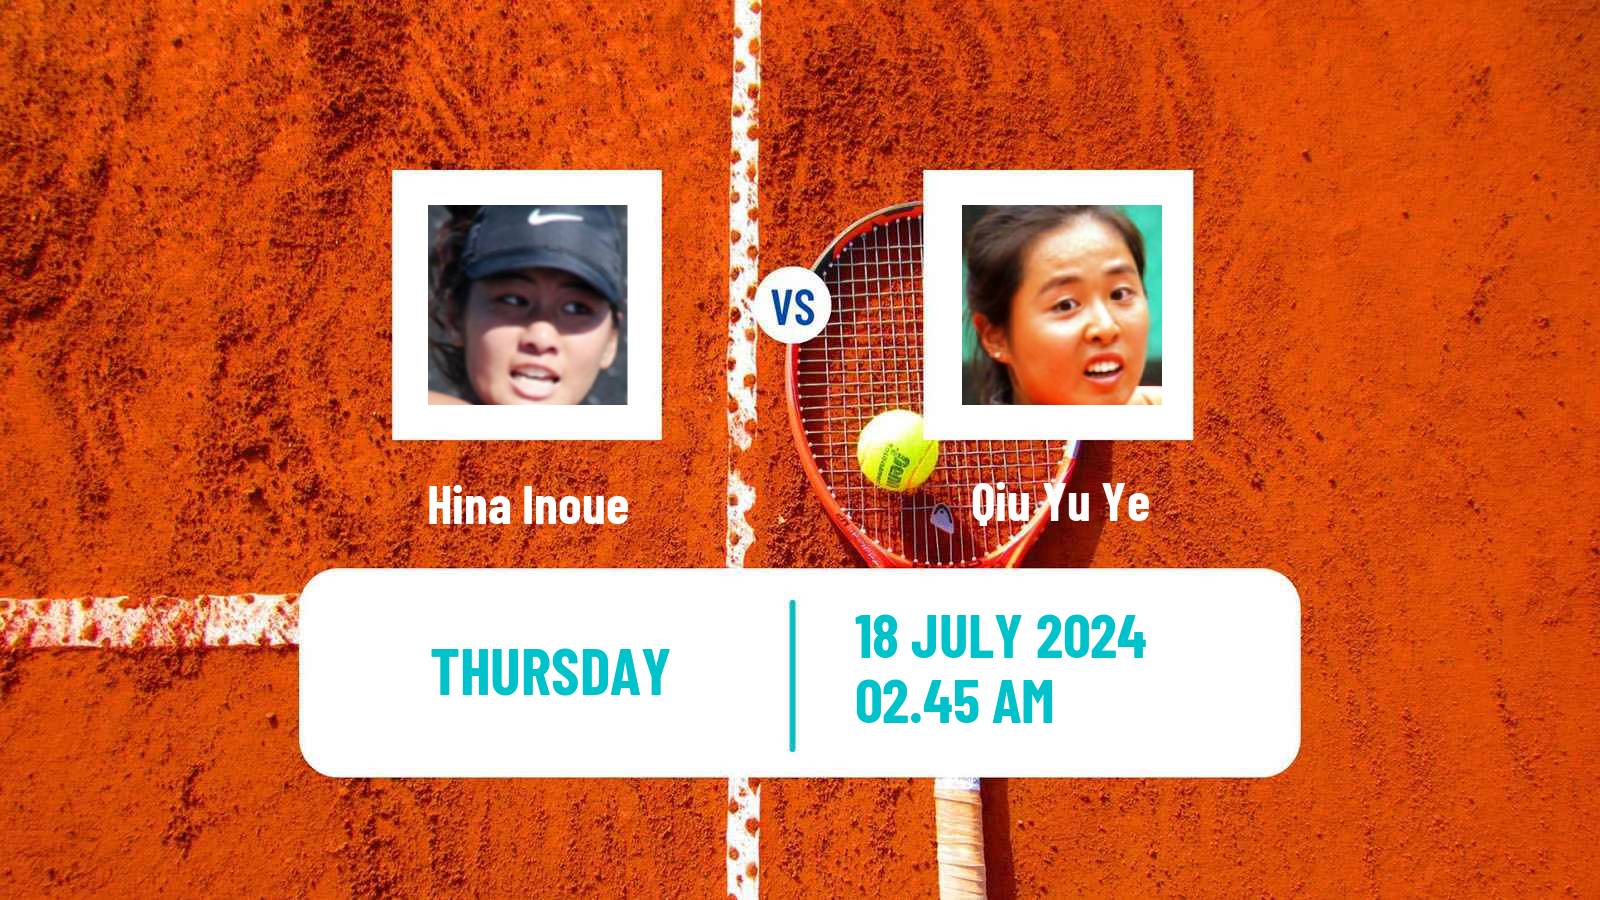 Tennis ITF W35 Tianjin 2 Women Hina Inoue - Qiu Yu Ye